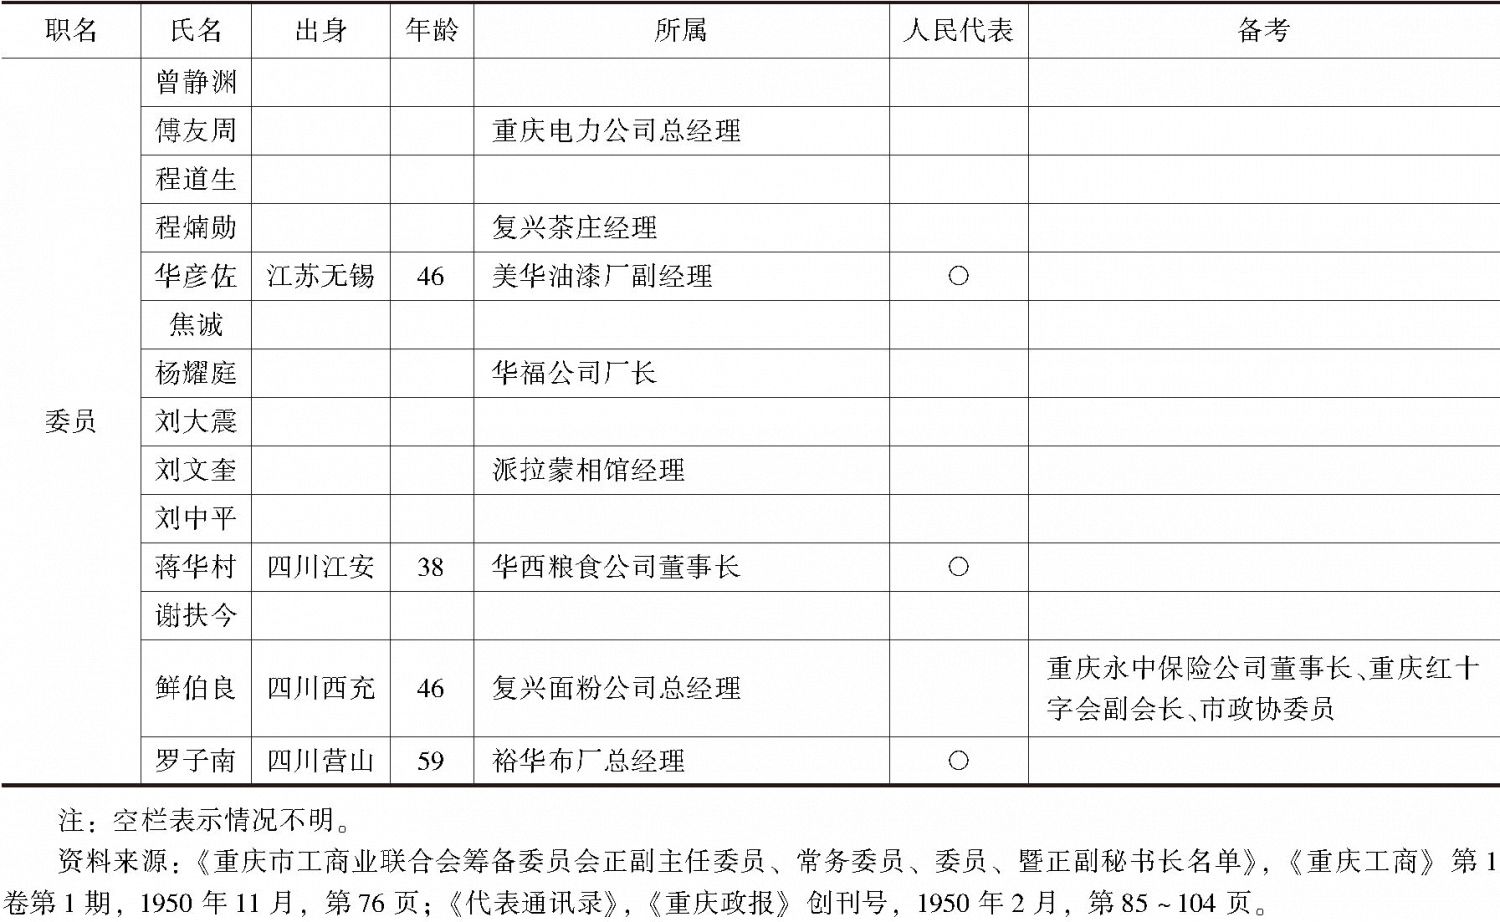 表6-1 重庆市工筹会委员一览-续表4